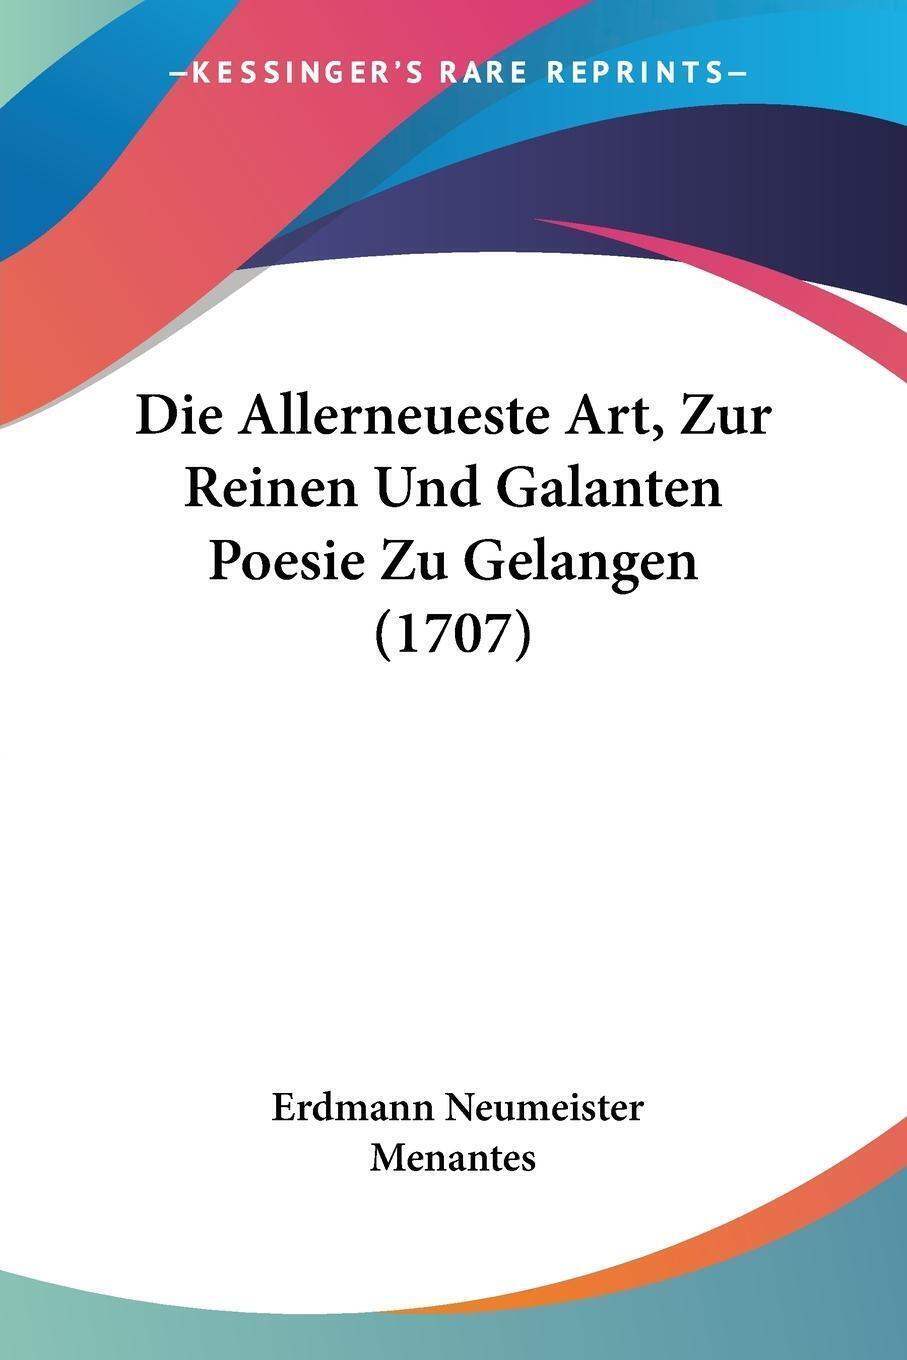 Die Allerneueste Art, Zur Reinen Und Galanten Poesie Zu Gelangen (1707) | Buch - Erdmann Neumeister